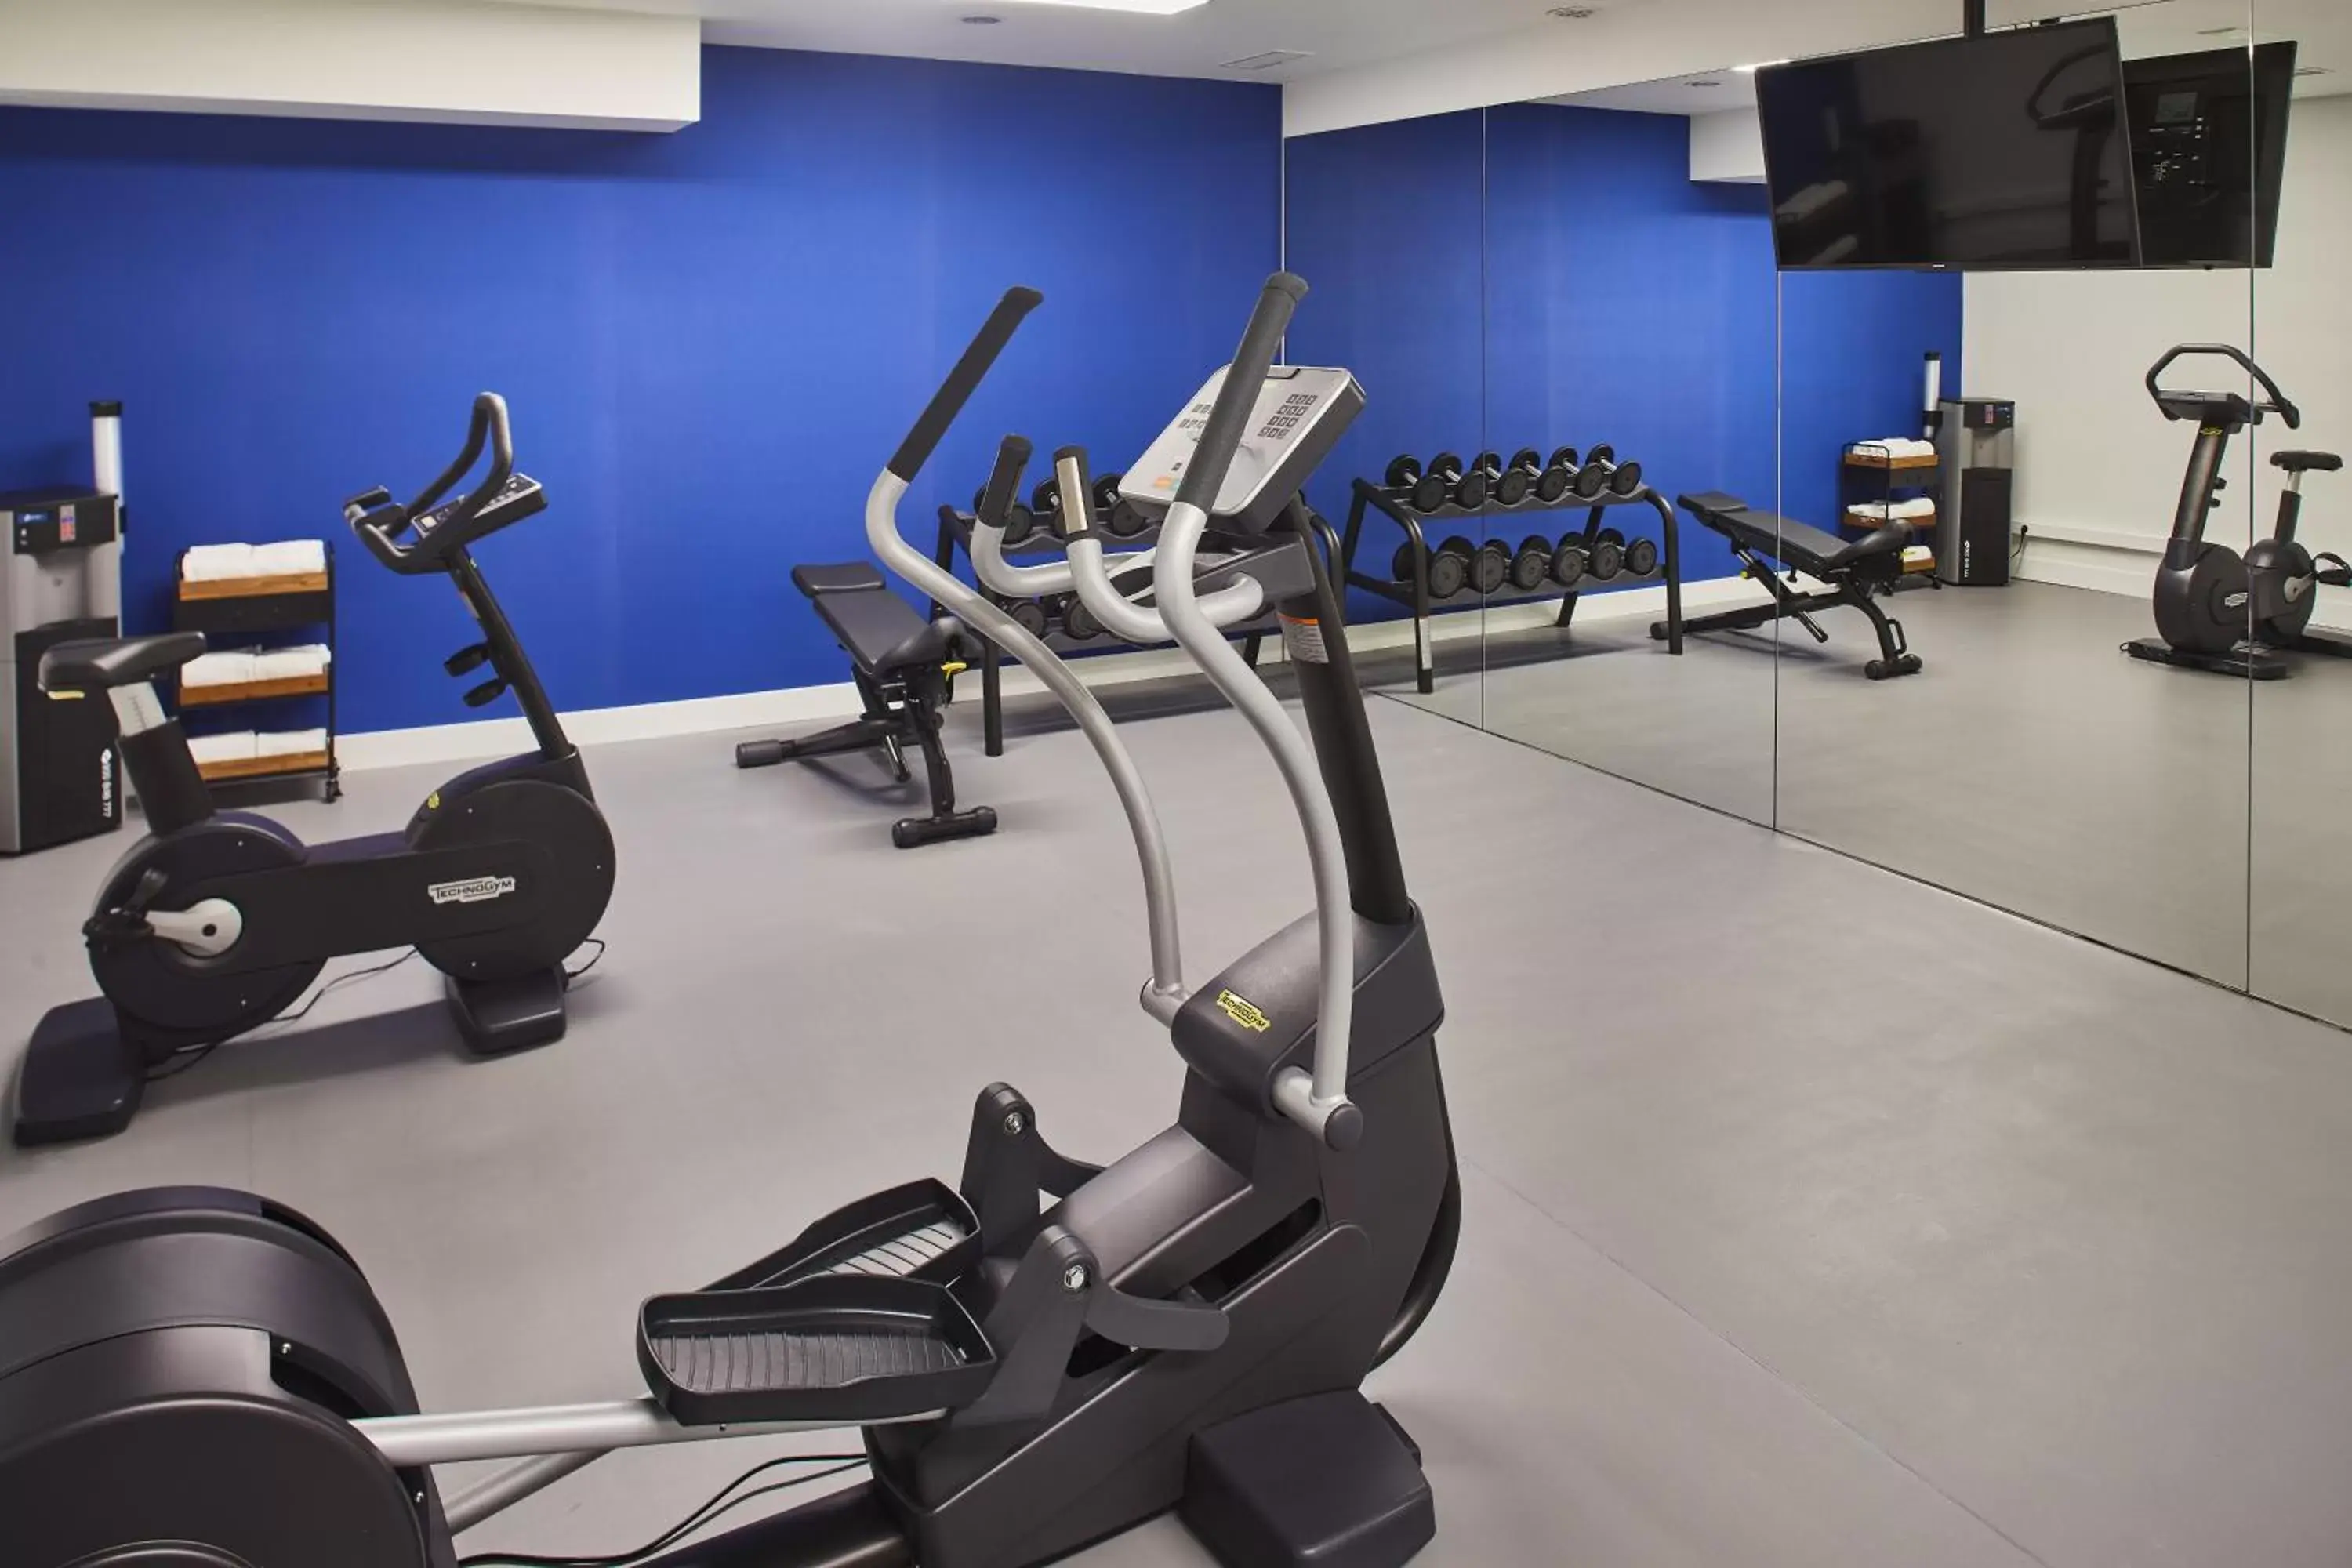 Fitness centre/facilities, Fitness Center/Facilities in Silken Río Santander